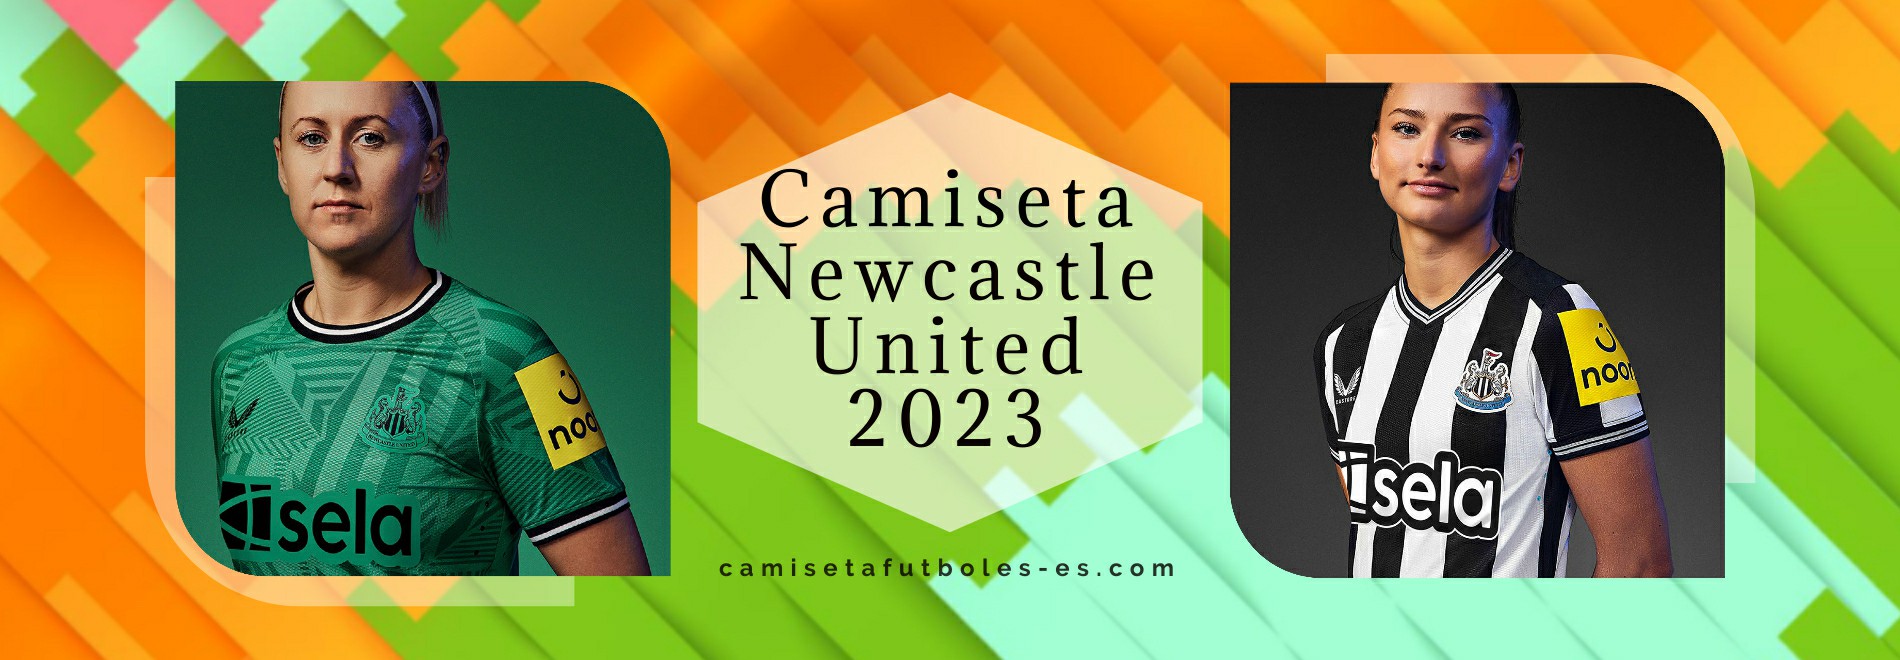 Camiseta Newcastle United 2023-2024